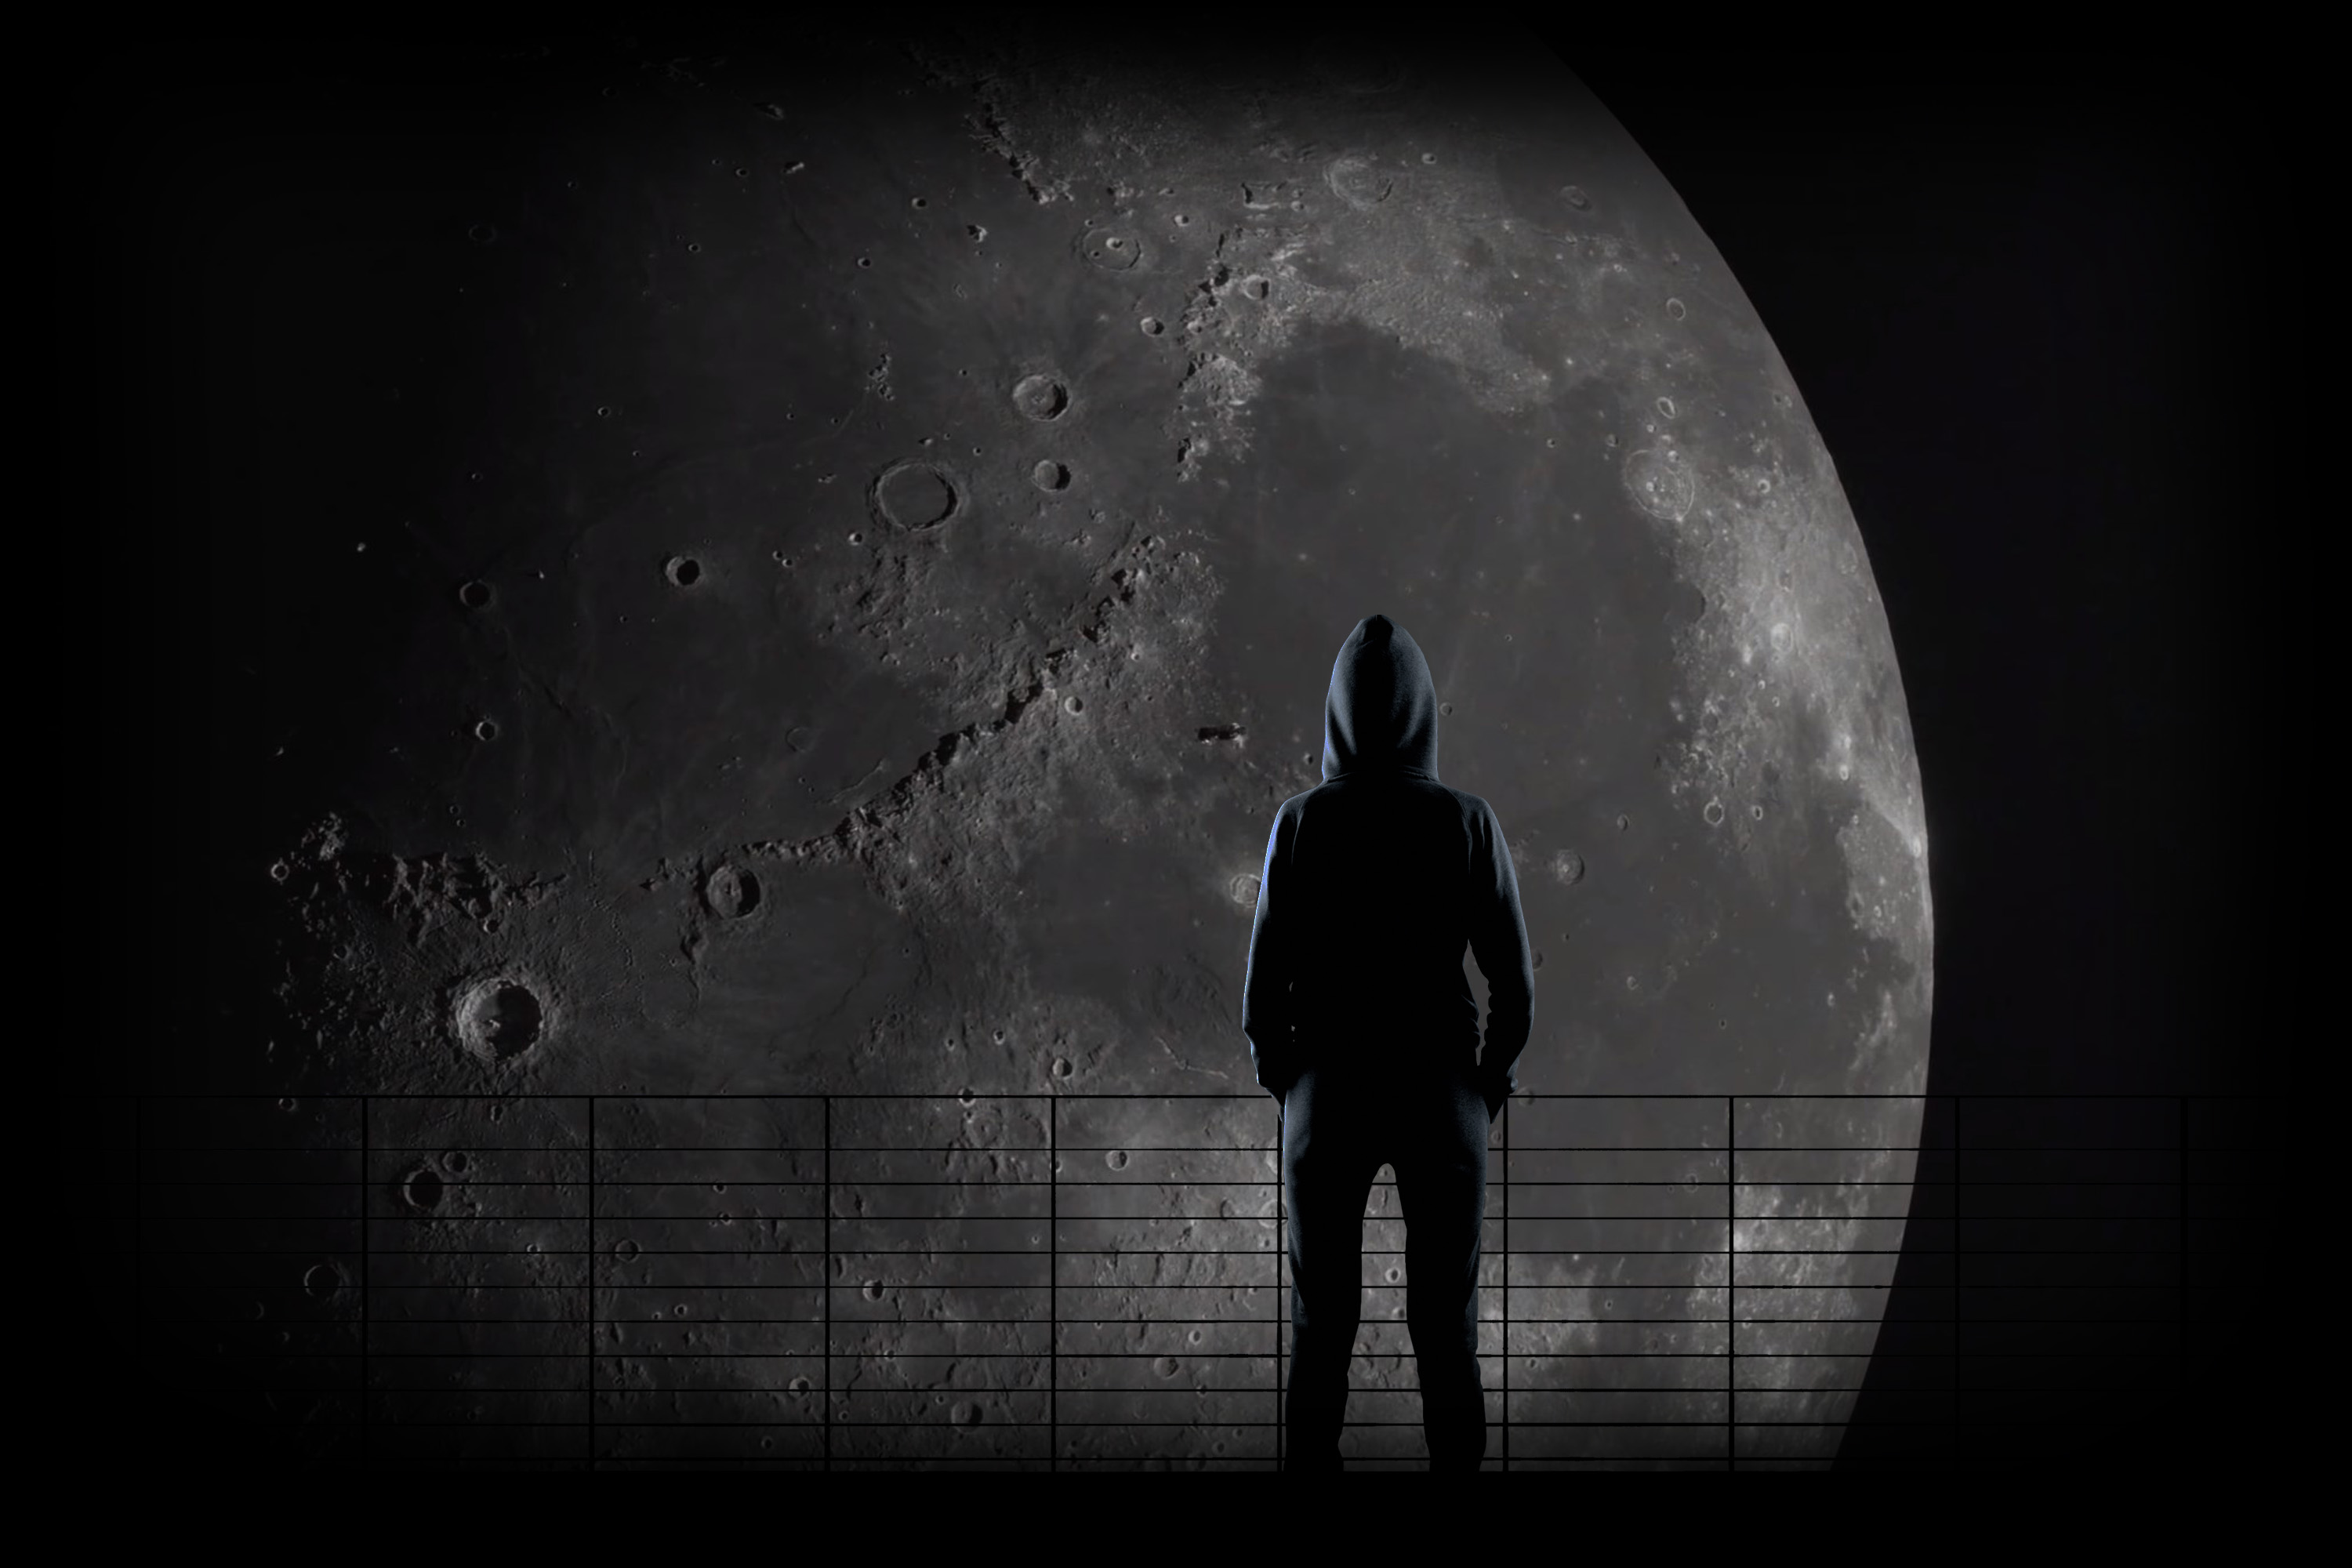 Le veilleur d'écran[s] S02E04 ú Avec For All Mankind, Apple décroche la Lune